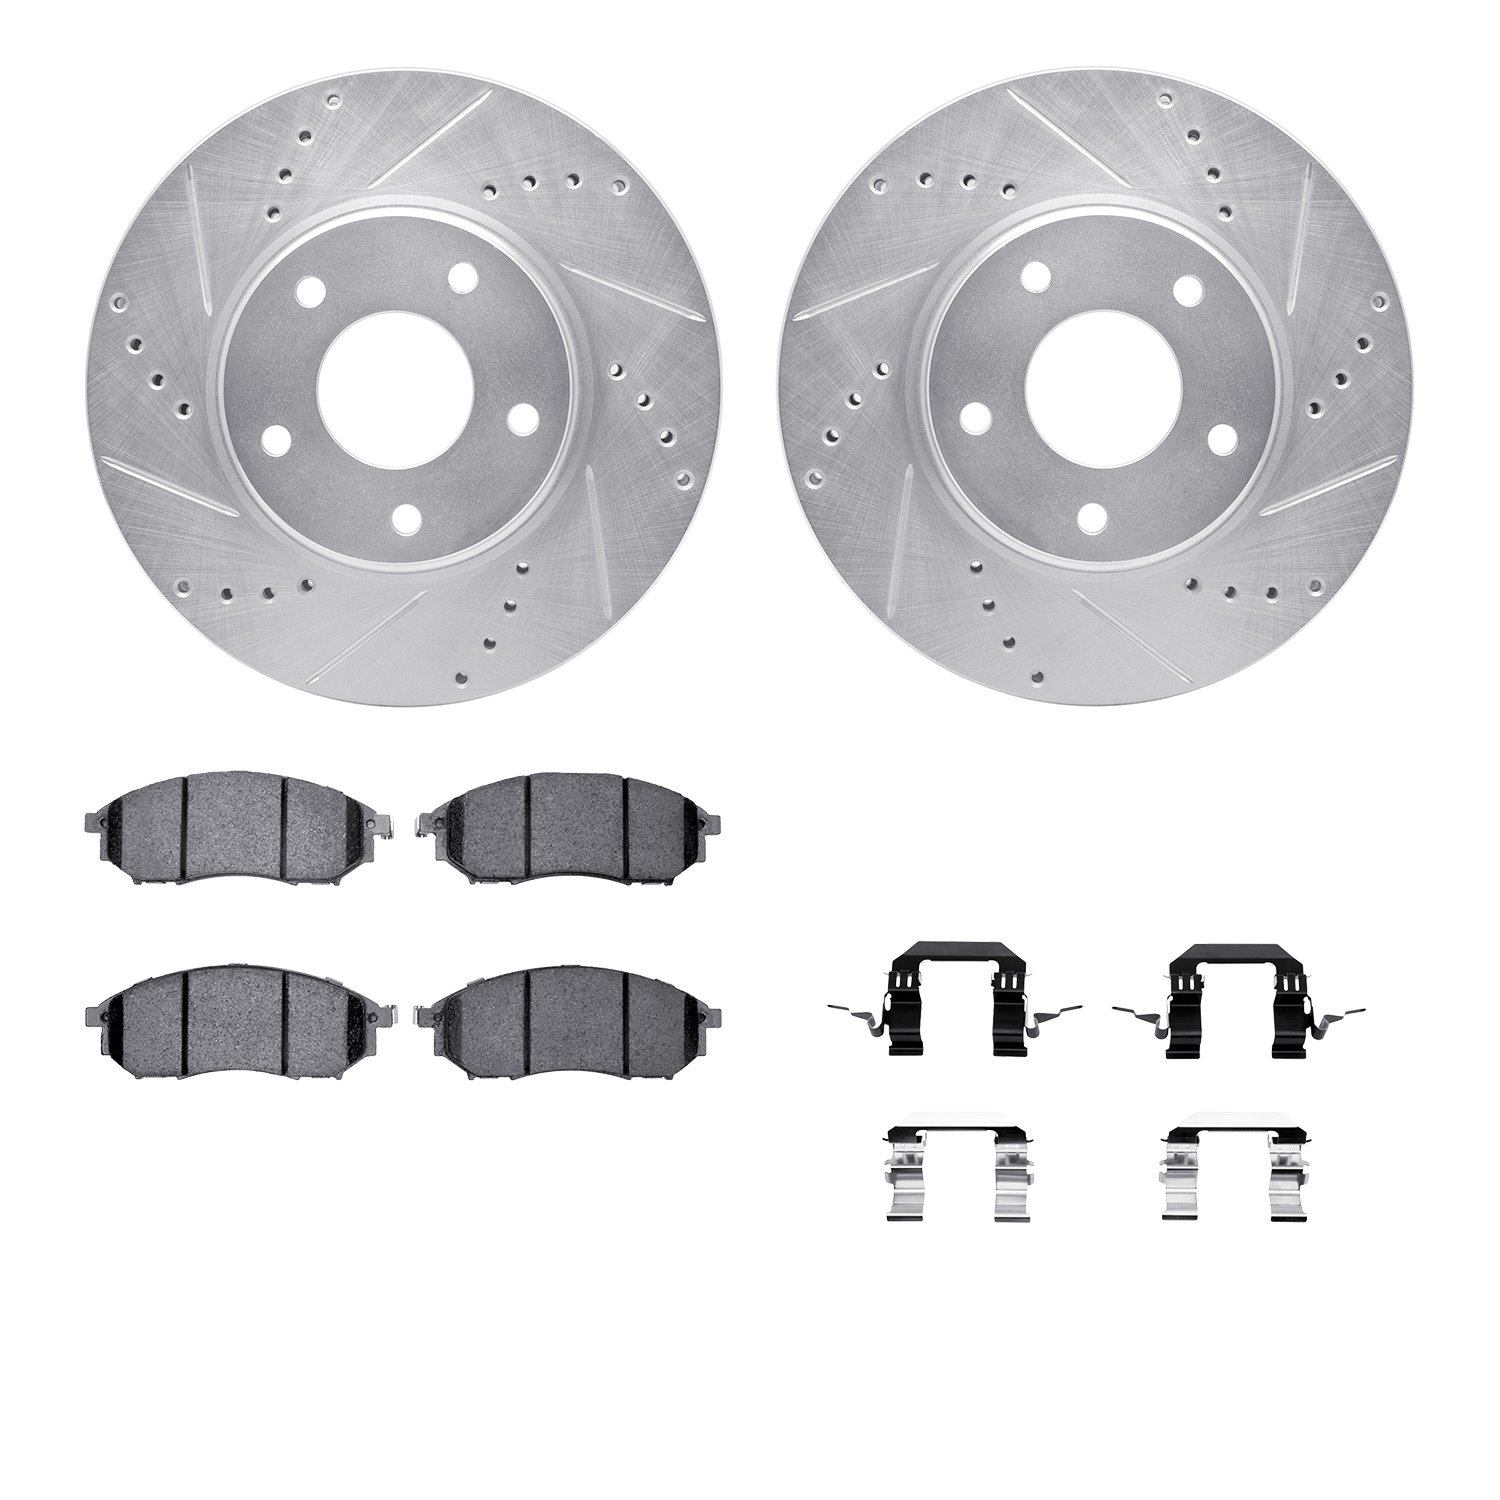 7612-67008 Drilled/Slotted Brake Rotors w/5000 Euro Ceramic Brake Pads Kit & Hardware [Silver], 2002-2006 Infiniti/Nissan, Posit